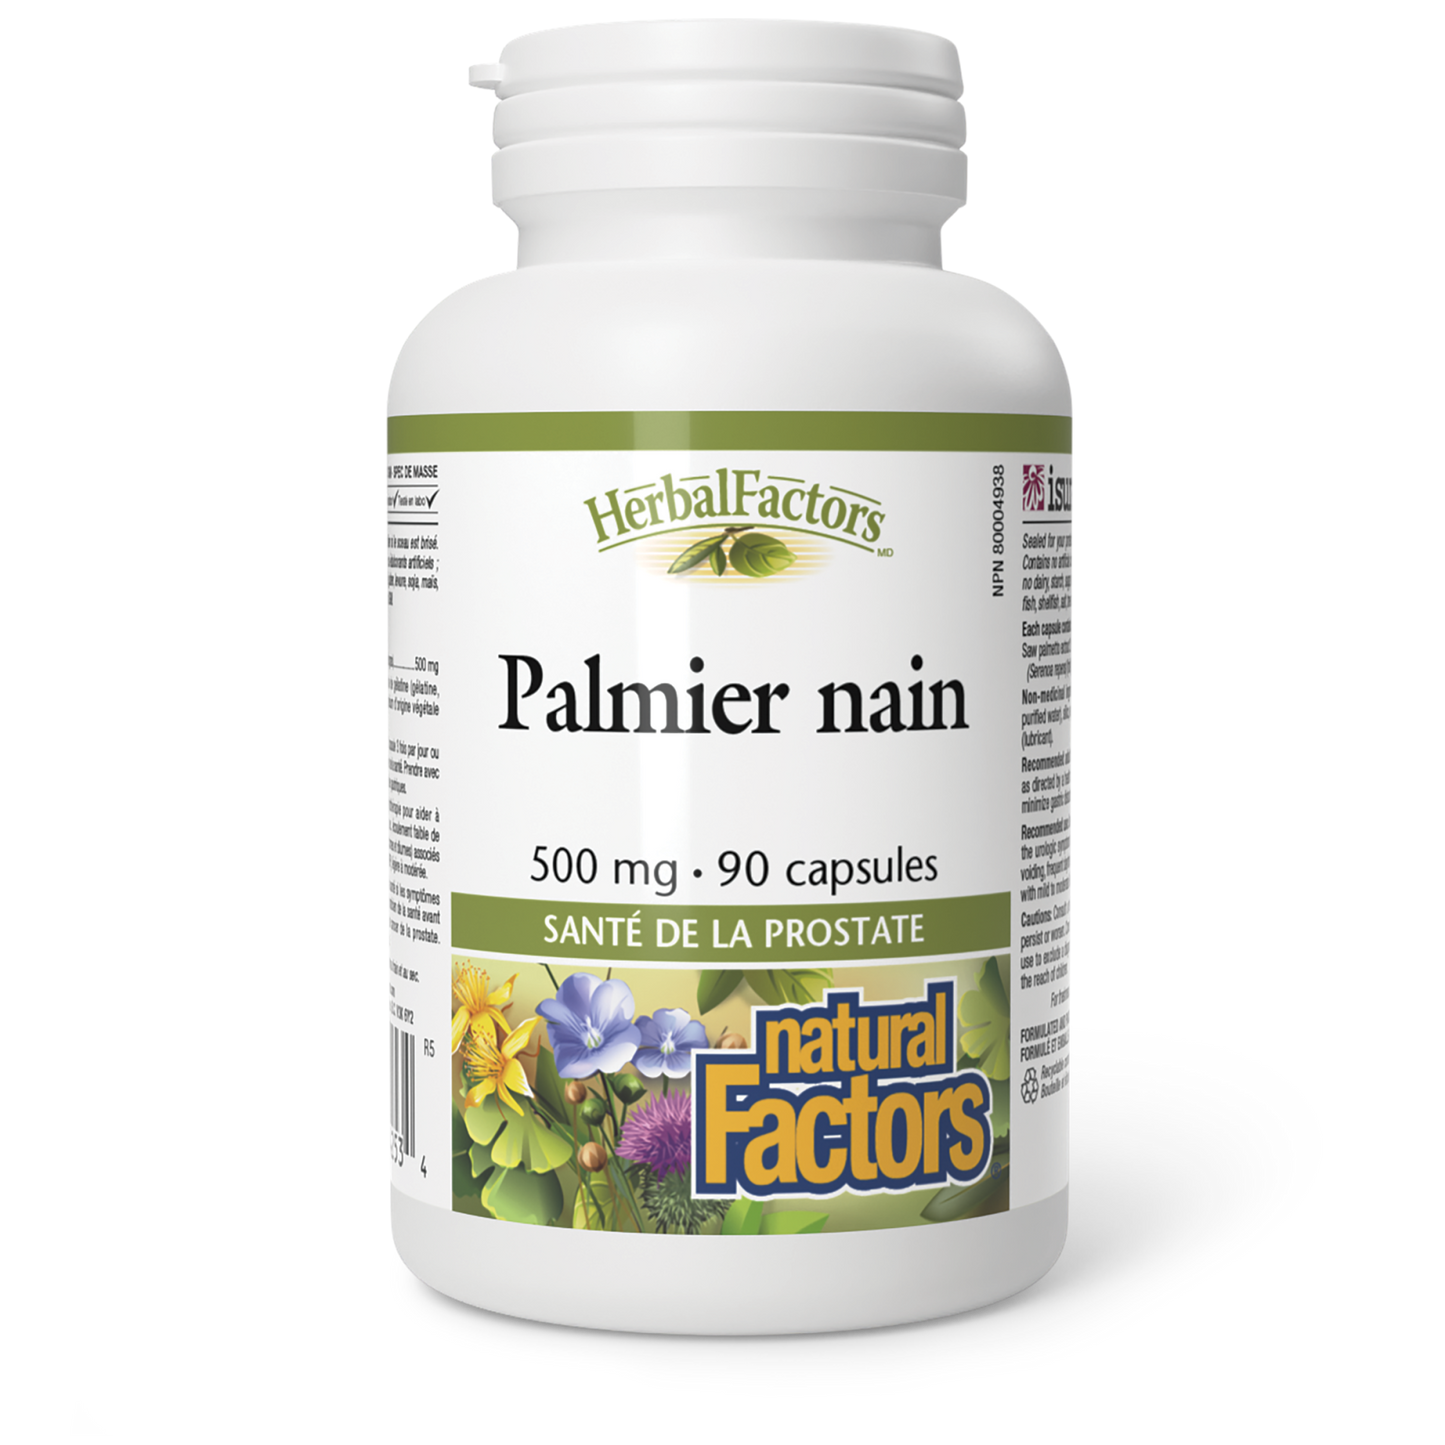 Palmier nain 500 mg, HerbalFactors, Natural Factors|v|image|4253